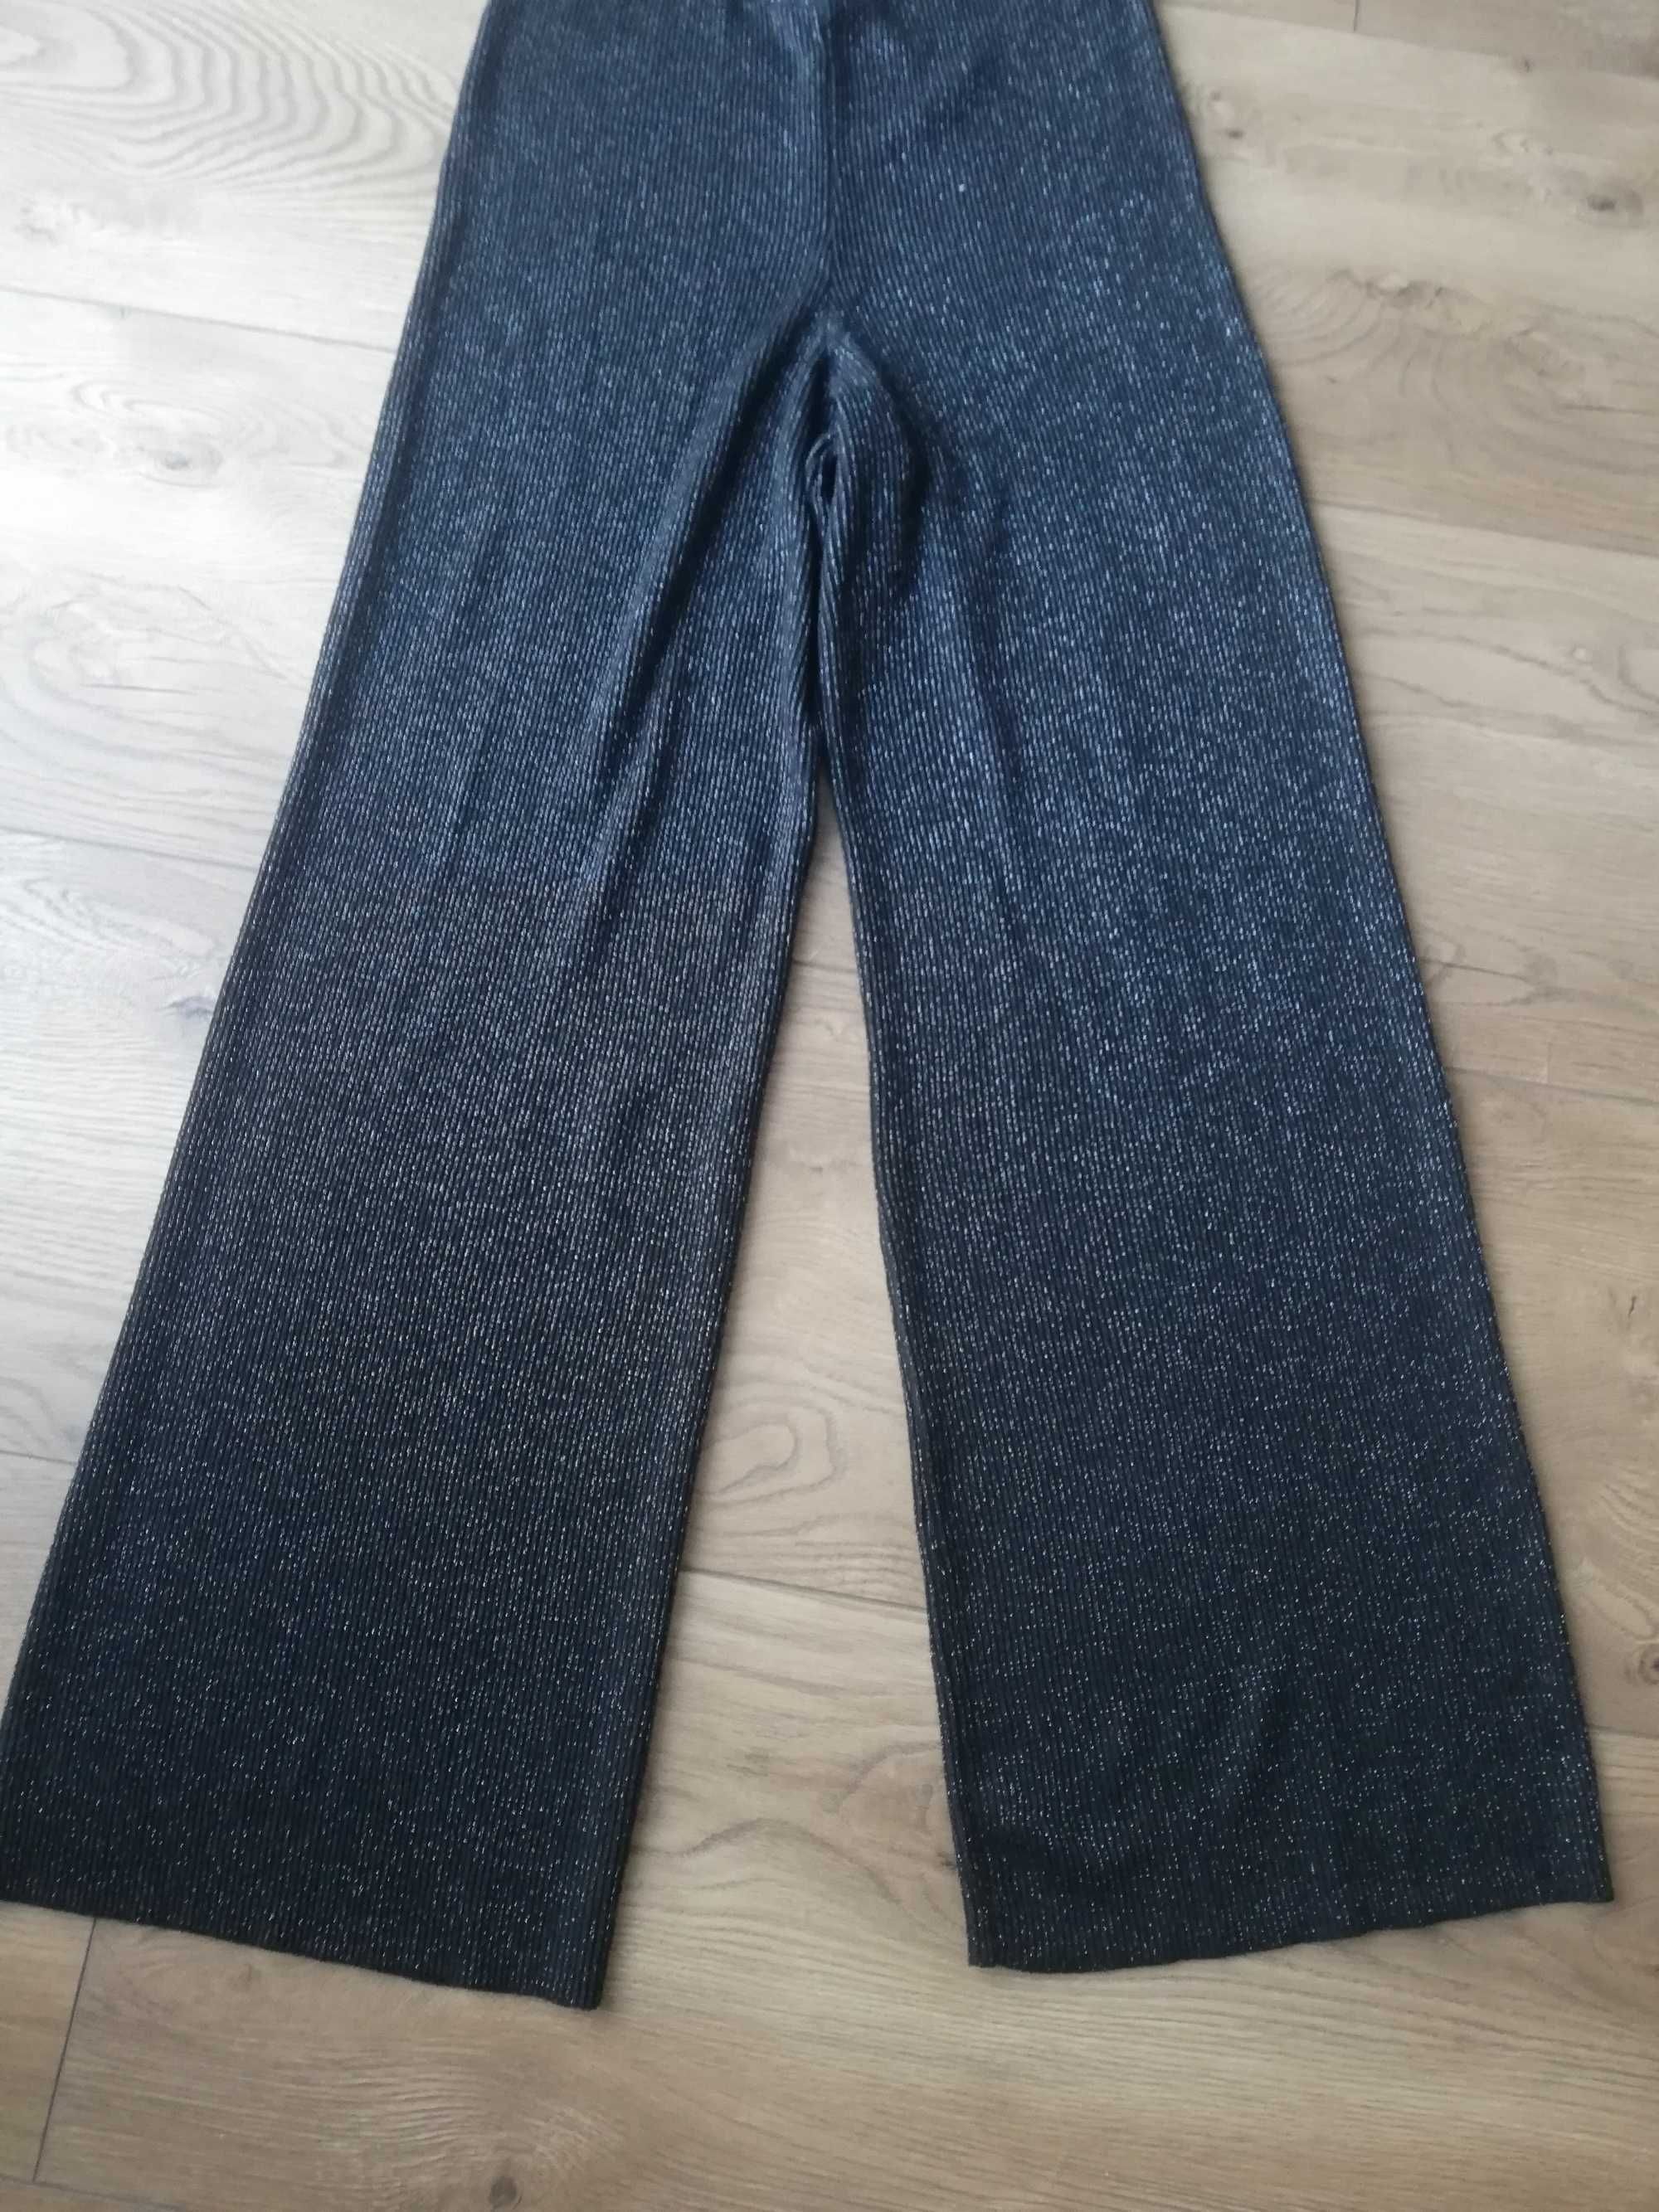 Ciepłe czarne szerokie spodnie Primark 38 40 M L